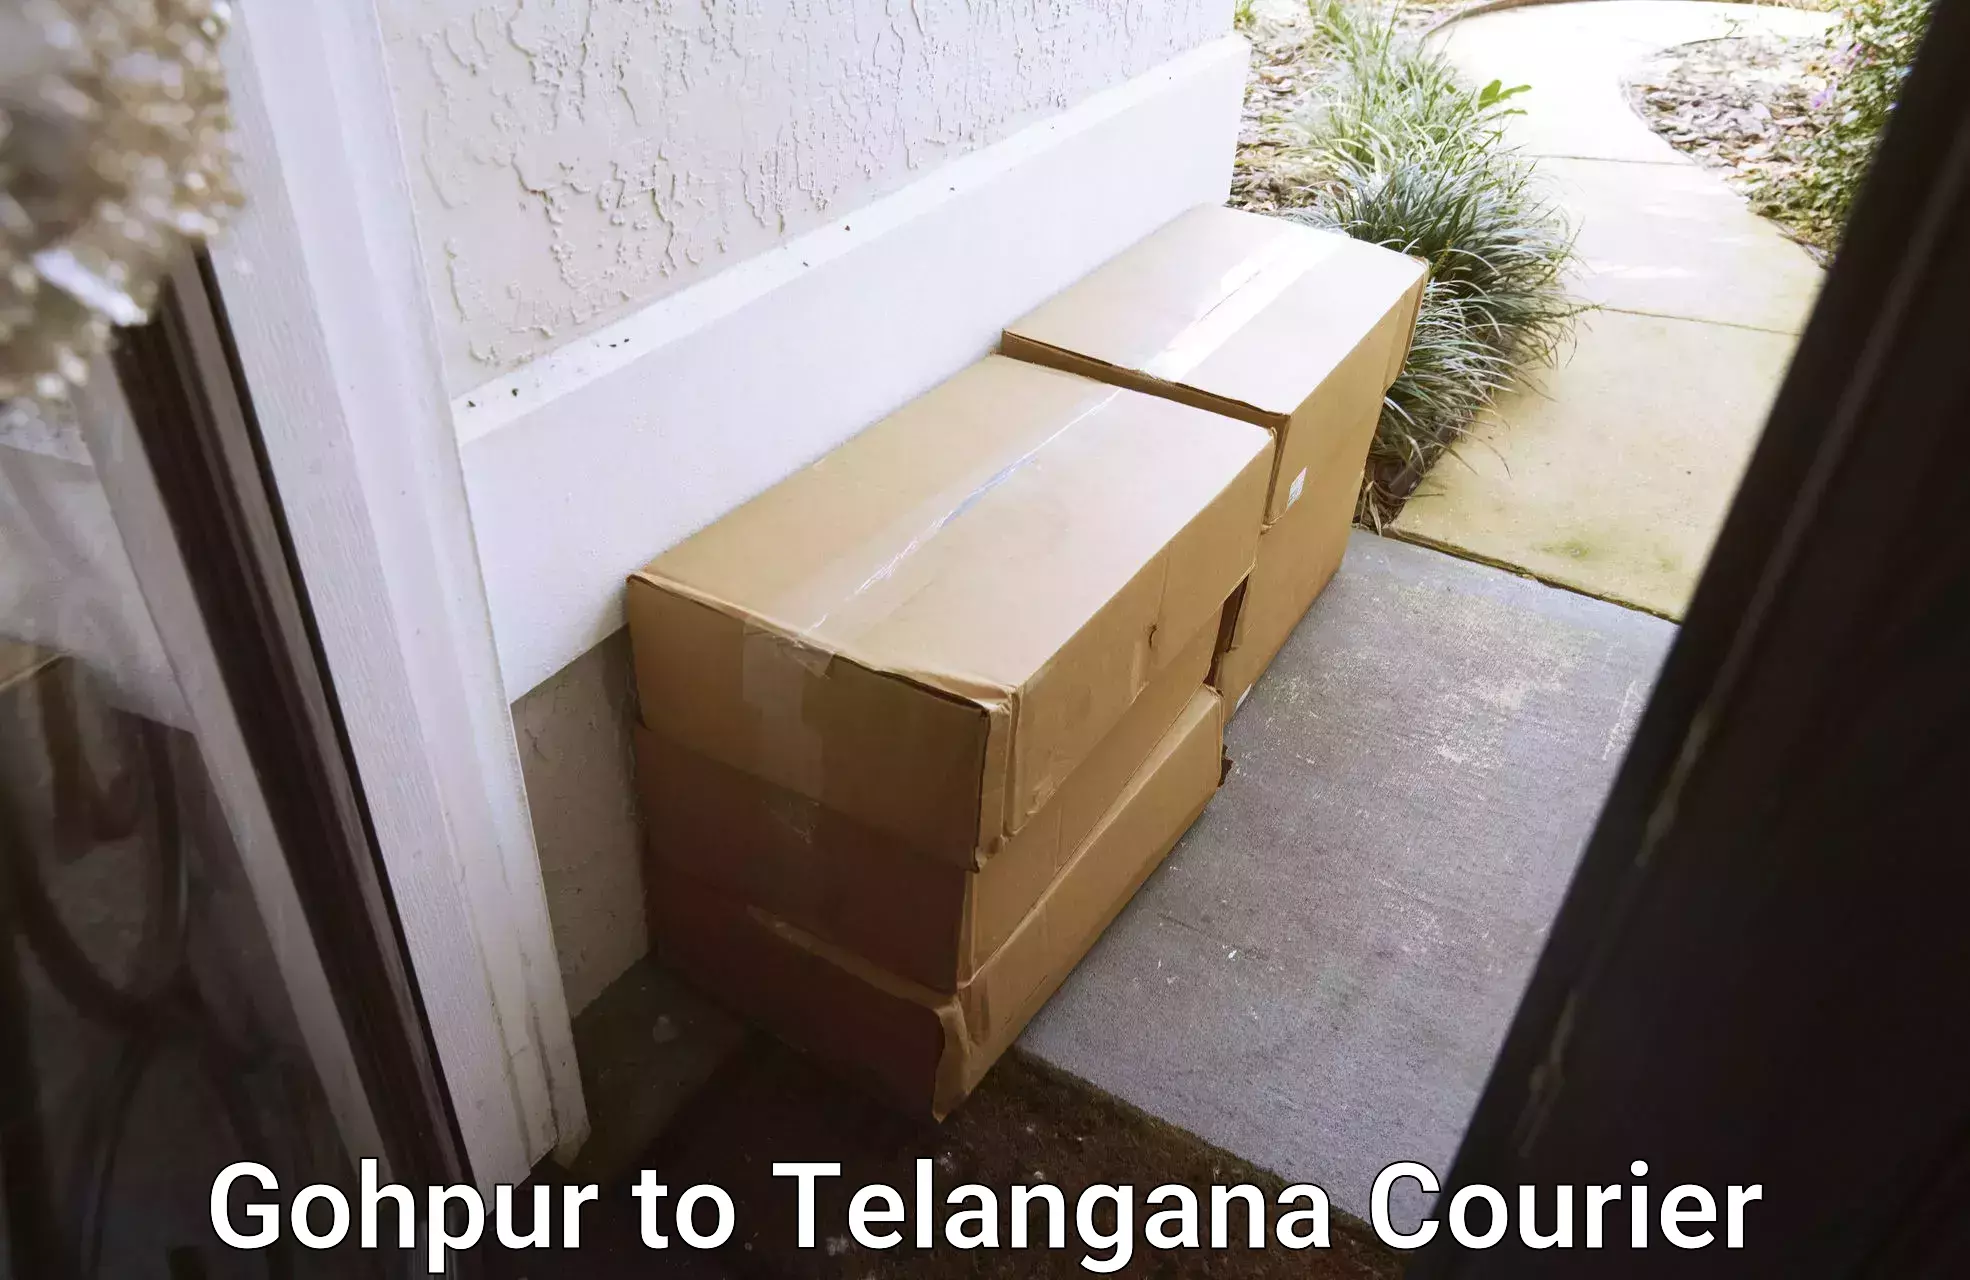 Emergency parcel delivery in Gohpur to Veenavanka